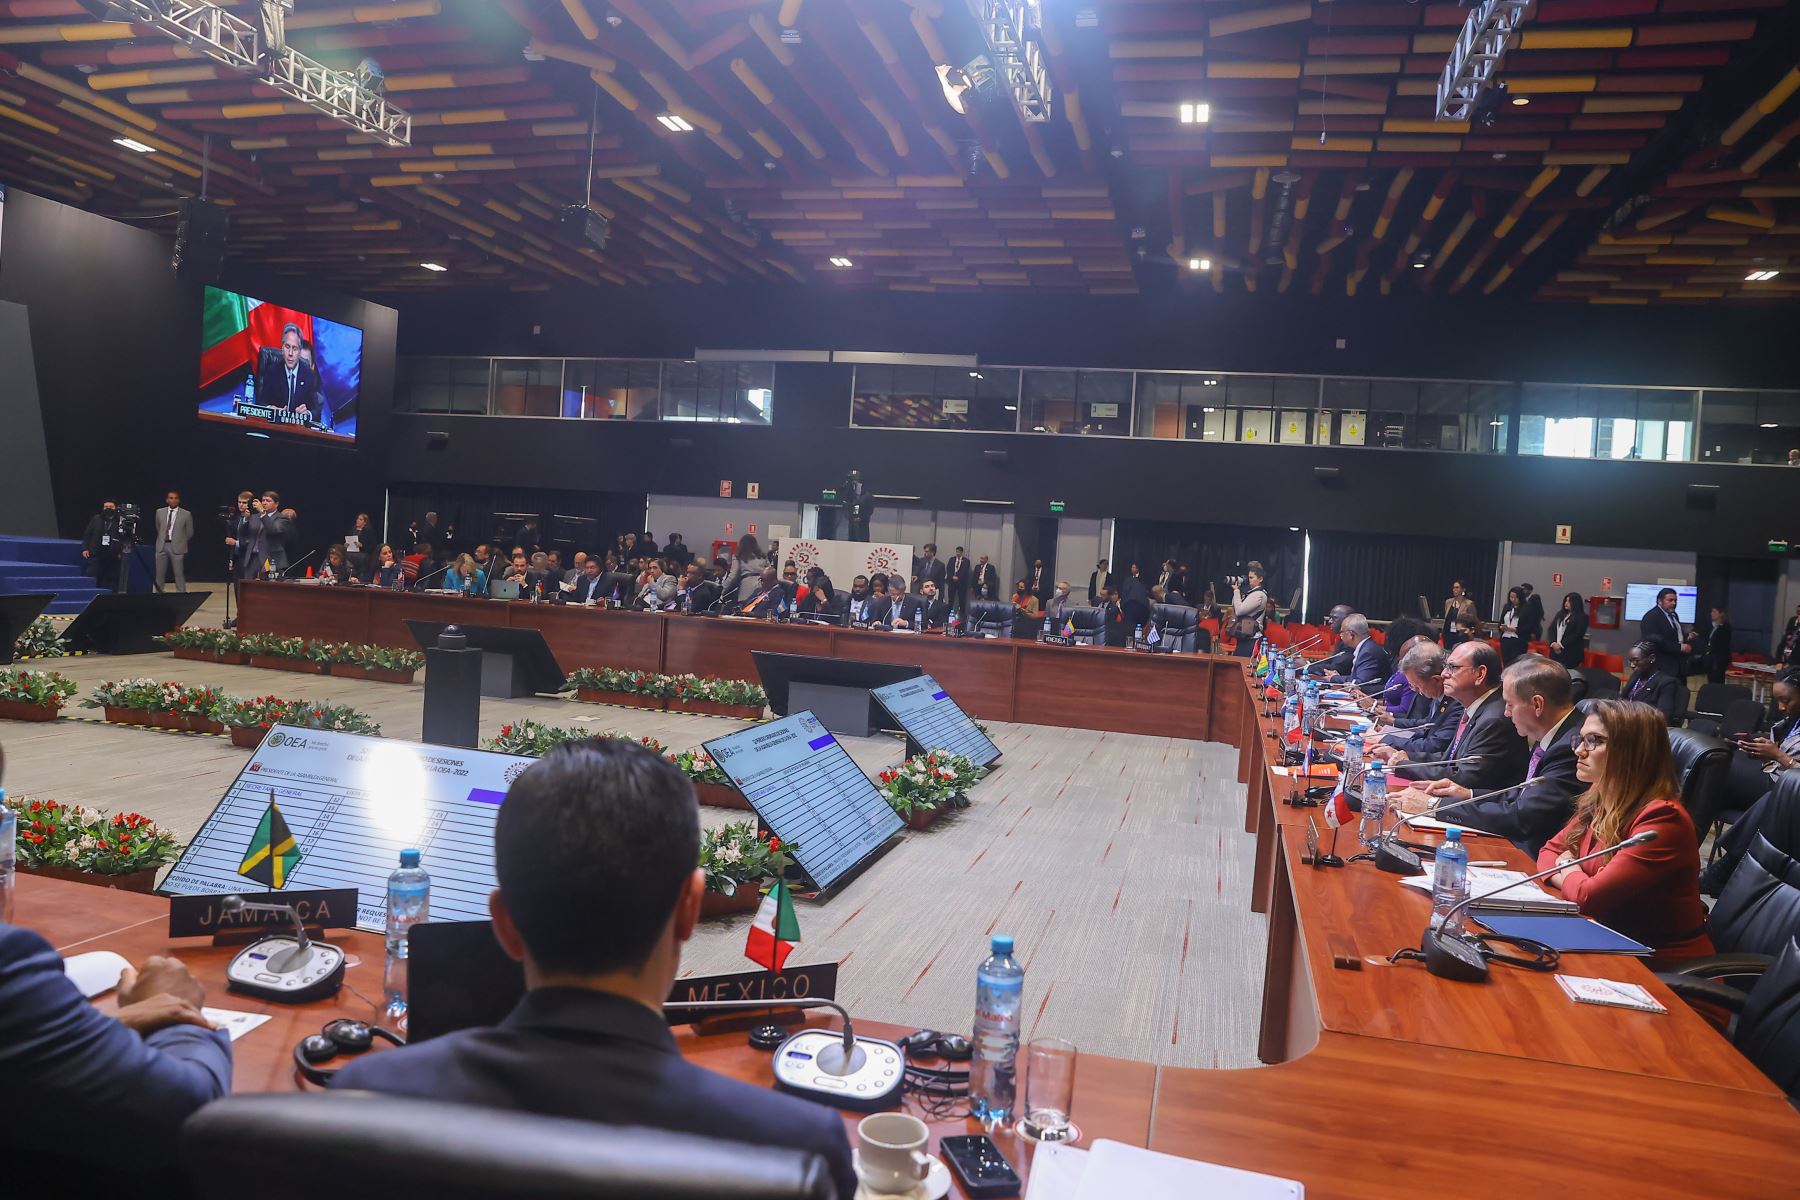 Secretario de Estado de los Estados Unidos de América, Antony Blinken, participa de la 52º Asamblea General de la Organización de Estados Americanos (OEA) que se realiza del 5 al 7 de octubre en Lima.

Foto:Andrés Valle